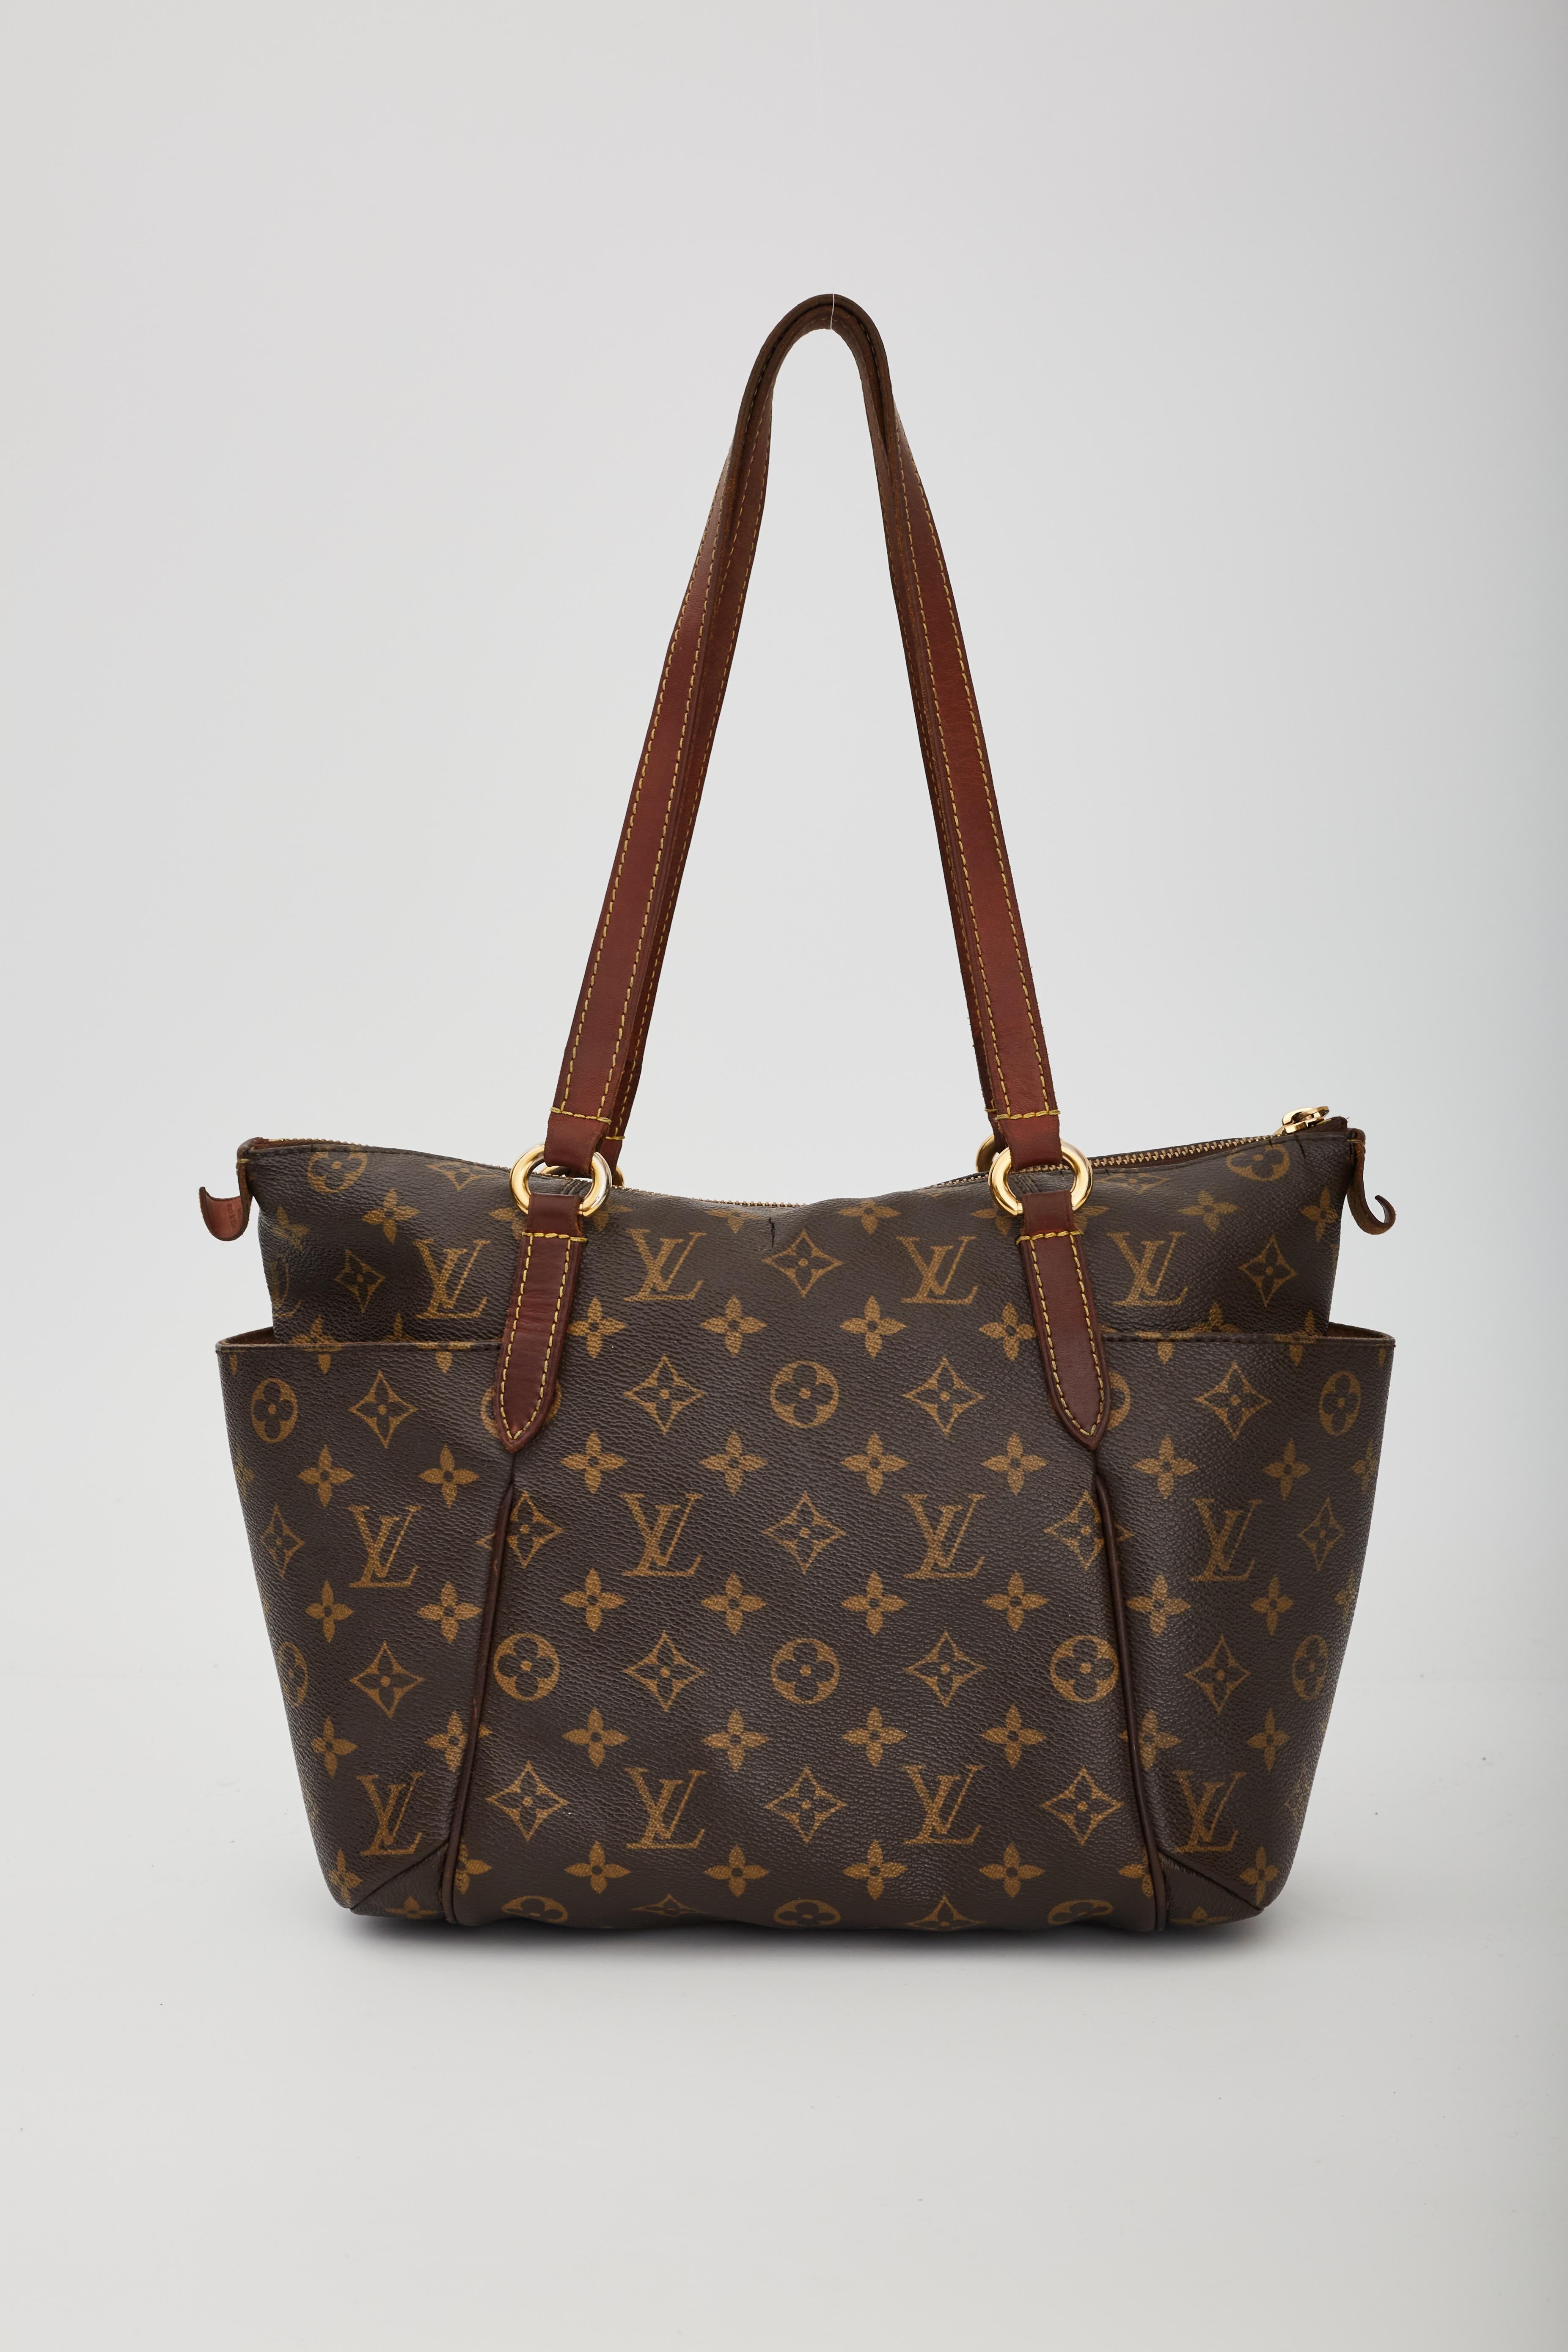 Louis Vuitton Totally PM Monogram Canvas Shoulder Bag